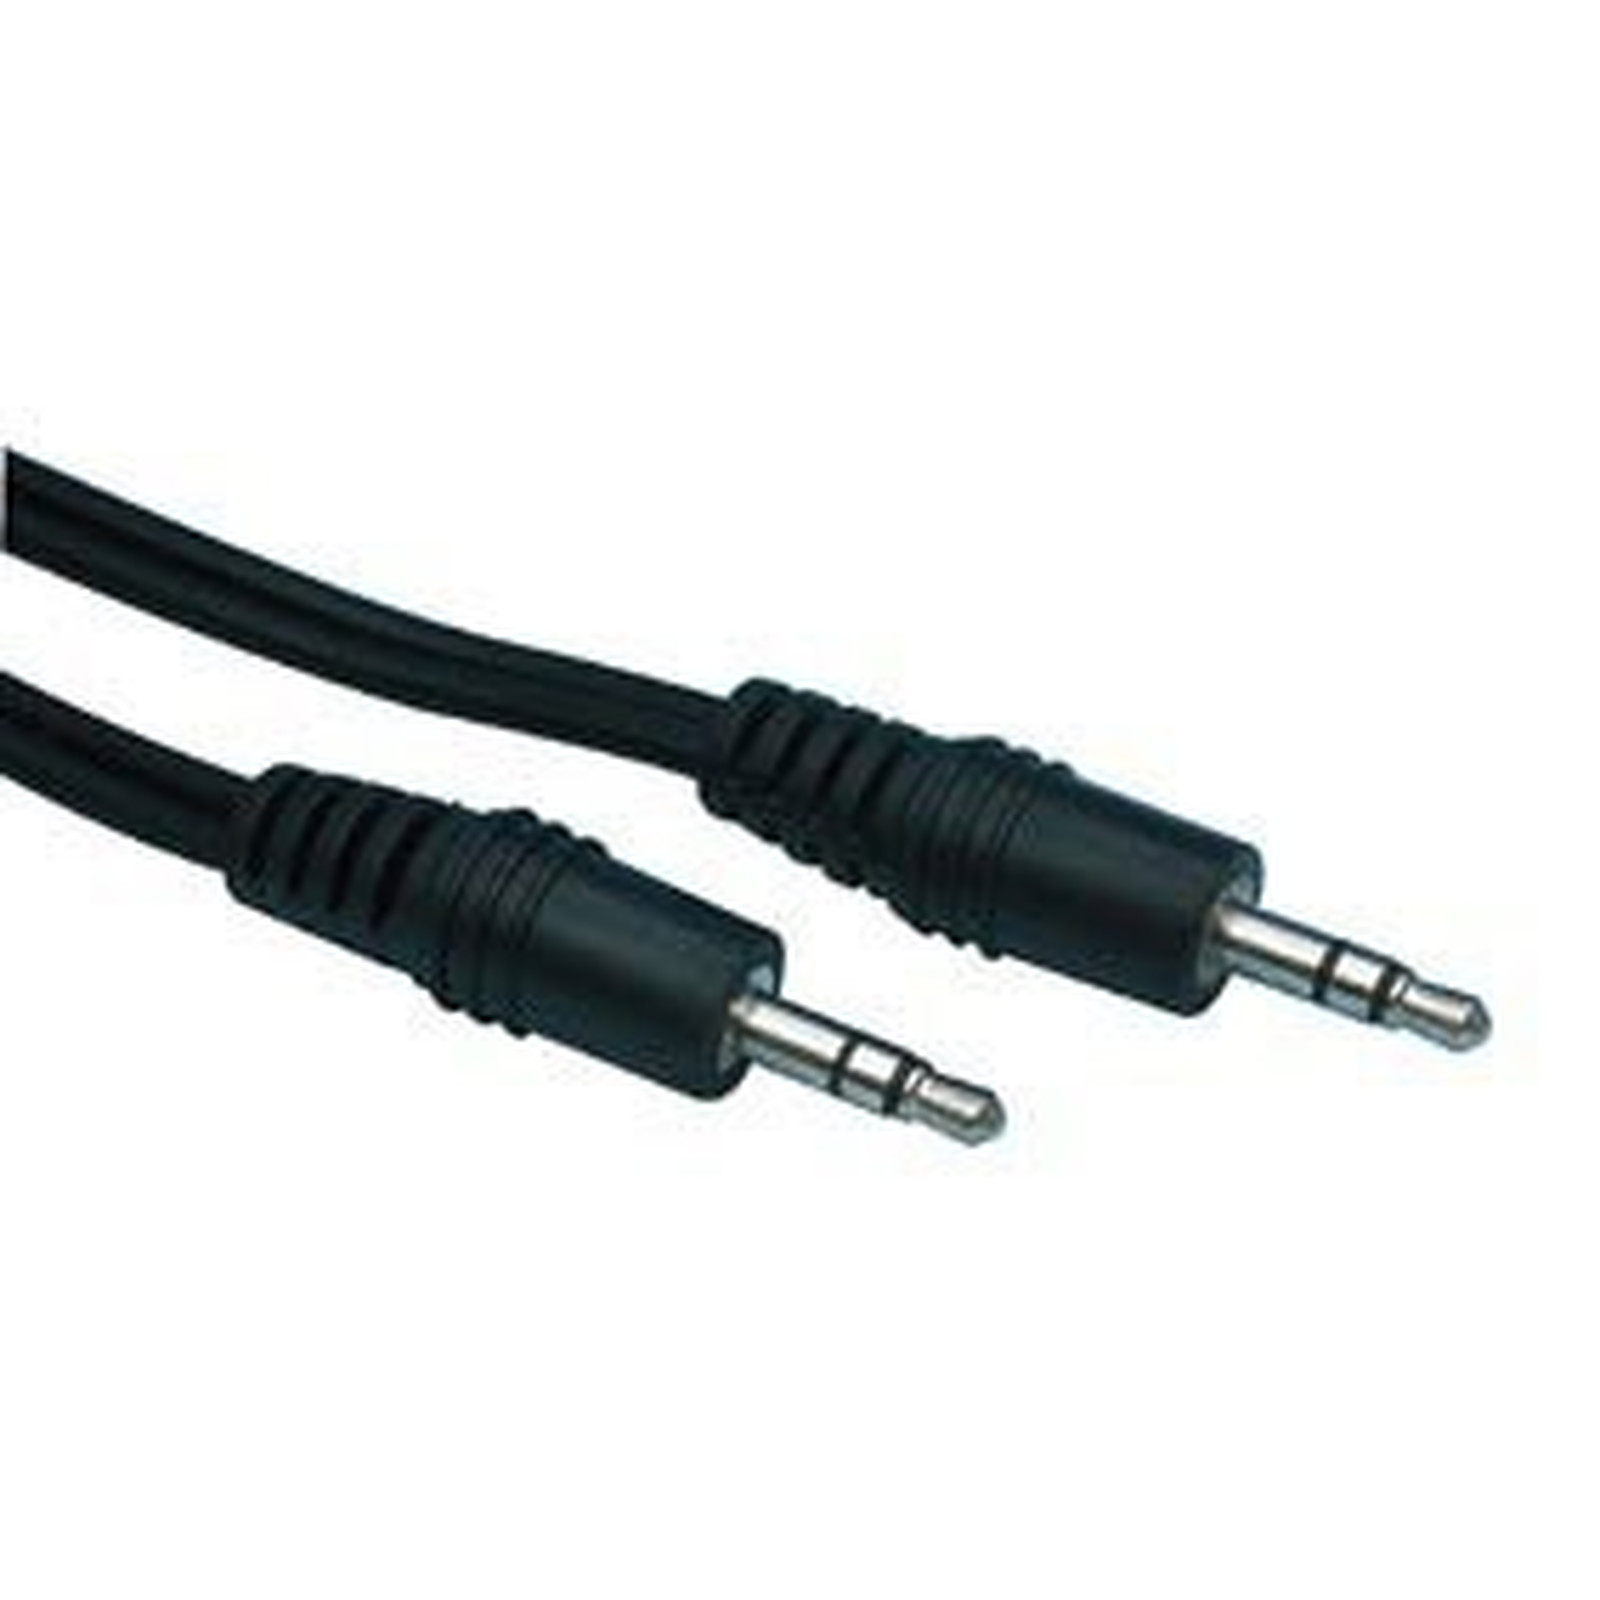 Cable audio Jack 3.5 mm stereo male/male (2.5 mètres) - Cable audio Jack Generique